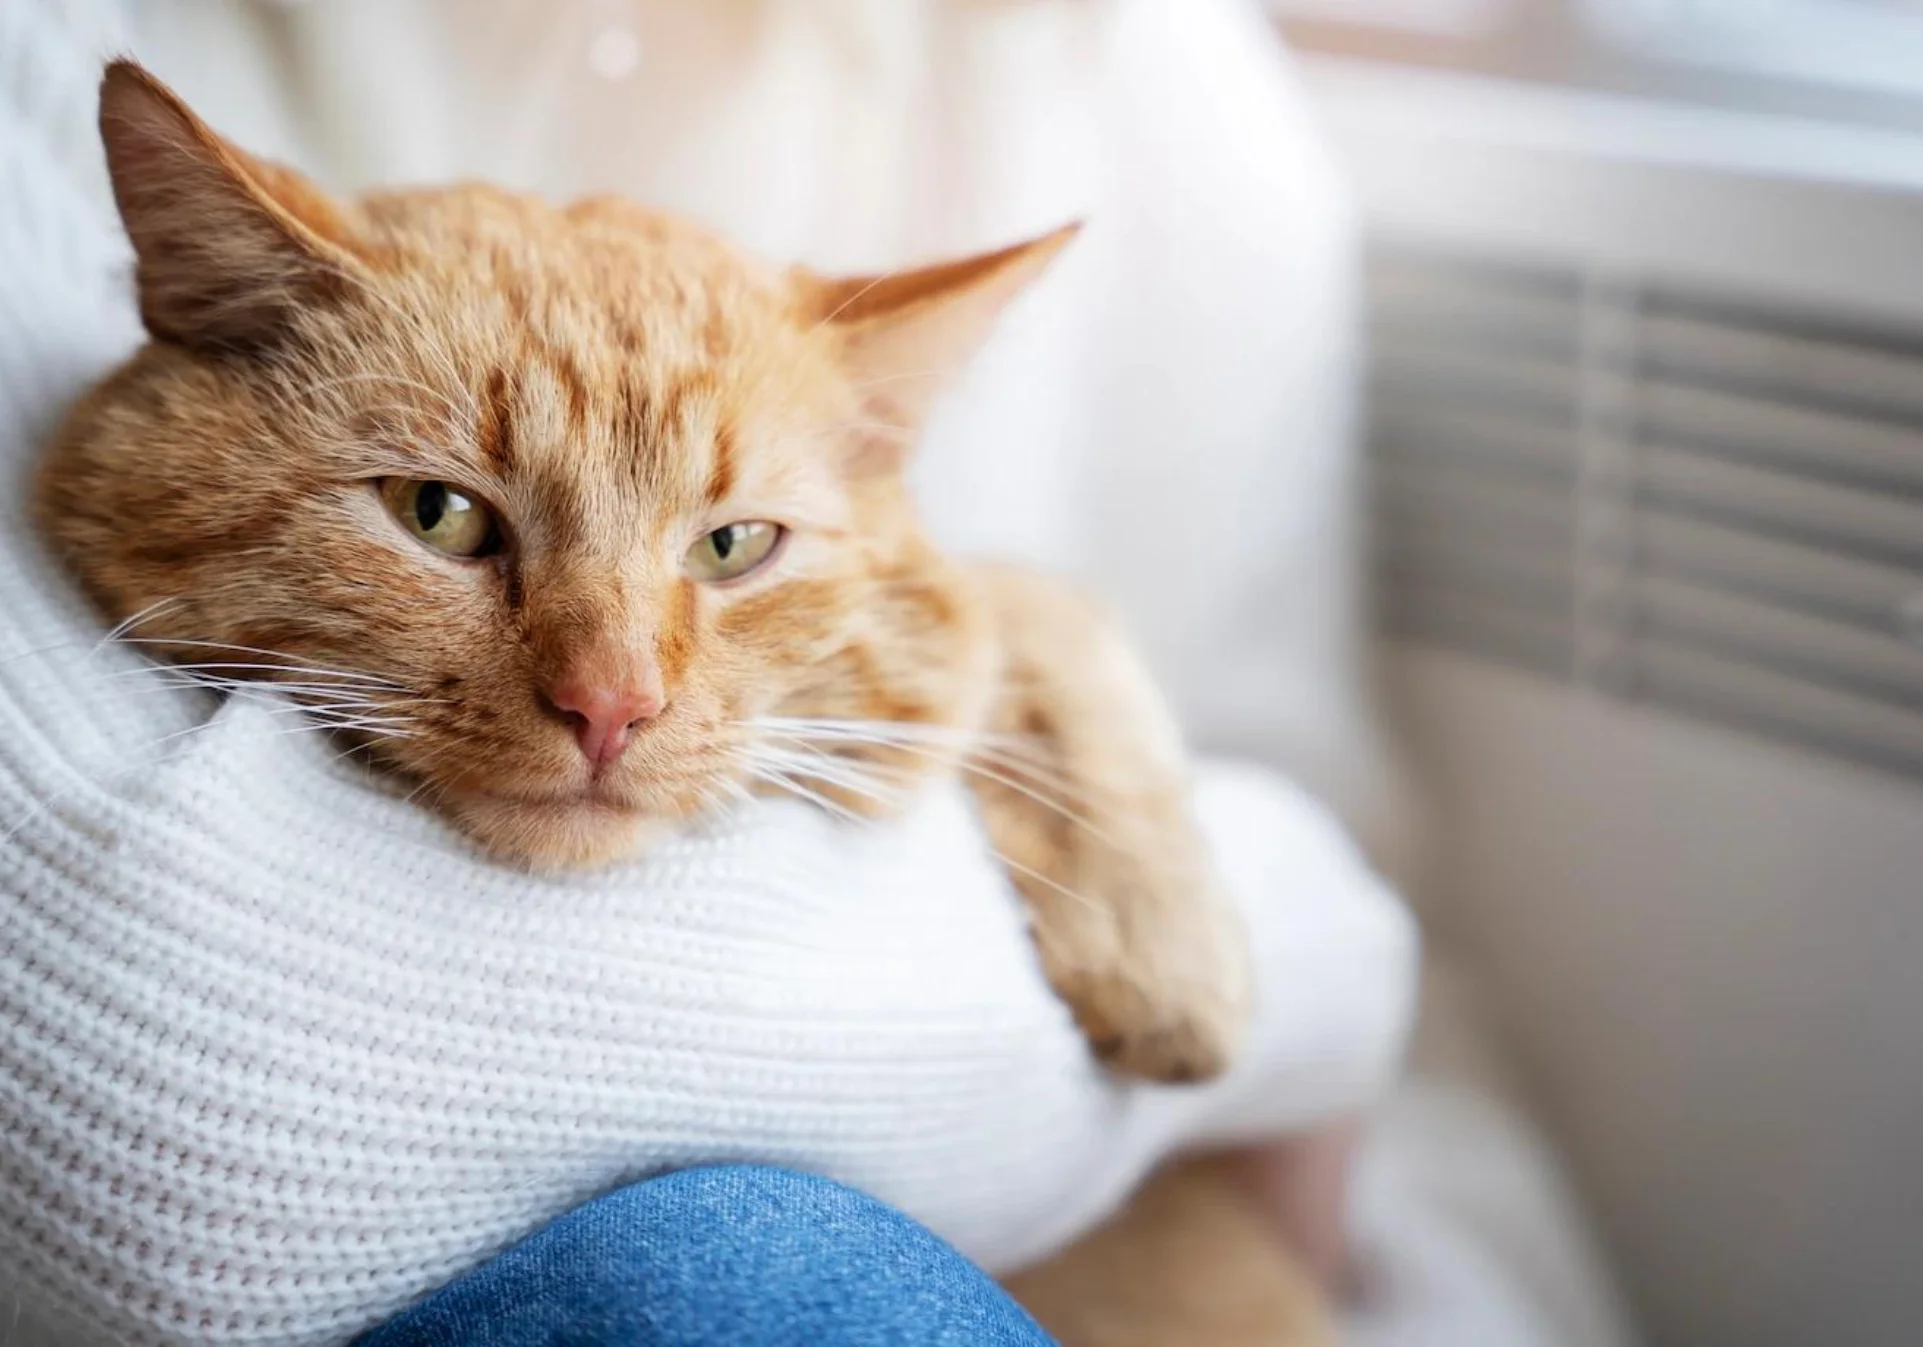 smotryashchiy-ryzhiy-kot-v-rukah Почему кошки любят лежать на человеке?